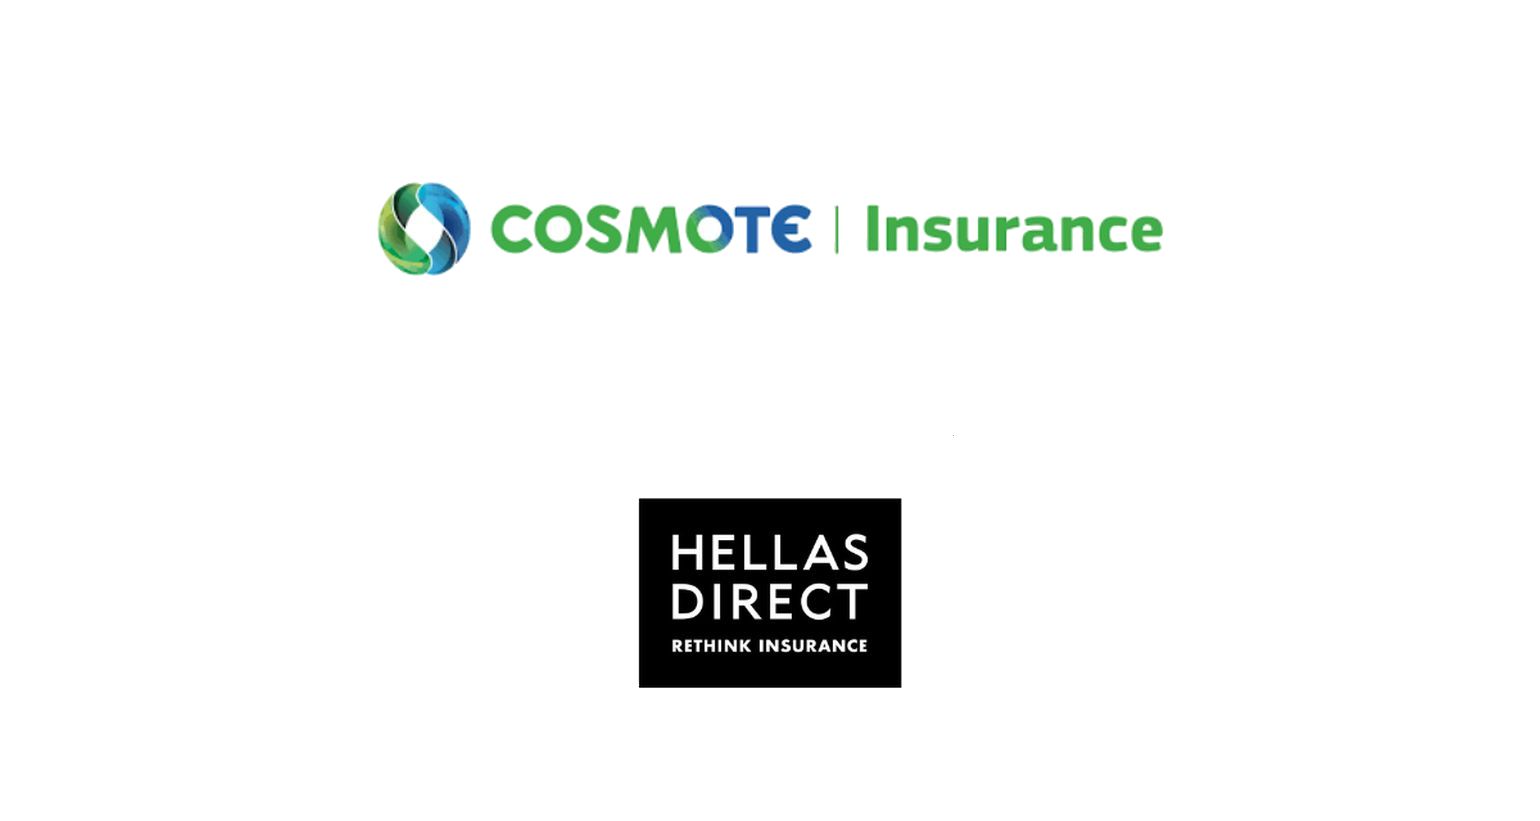 Συνεργασία Hellas Direct - COSMOTE Insurance στην ασφάλιση κατοικίας